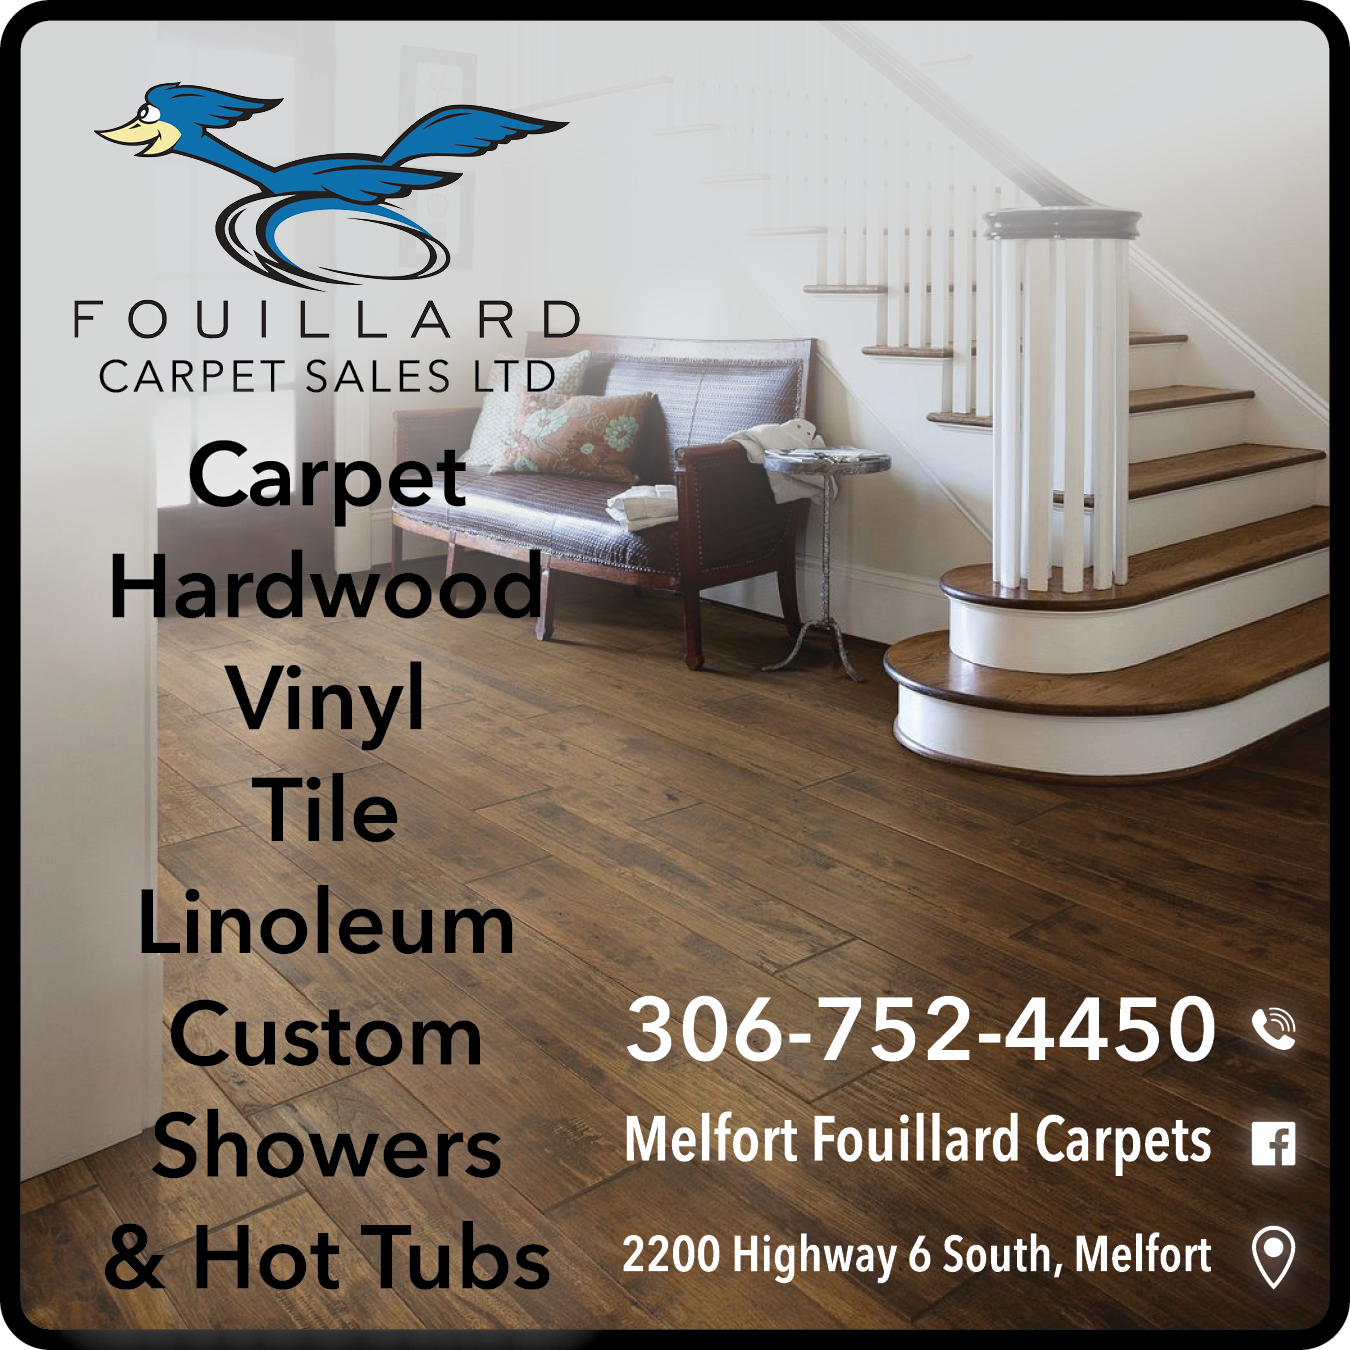 Fouillard Carpet Sales Ltd